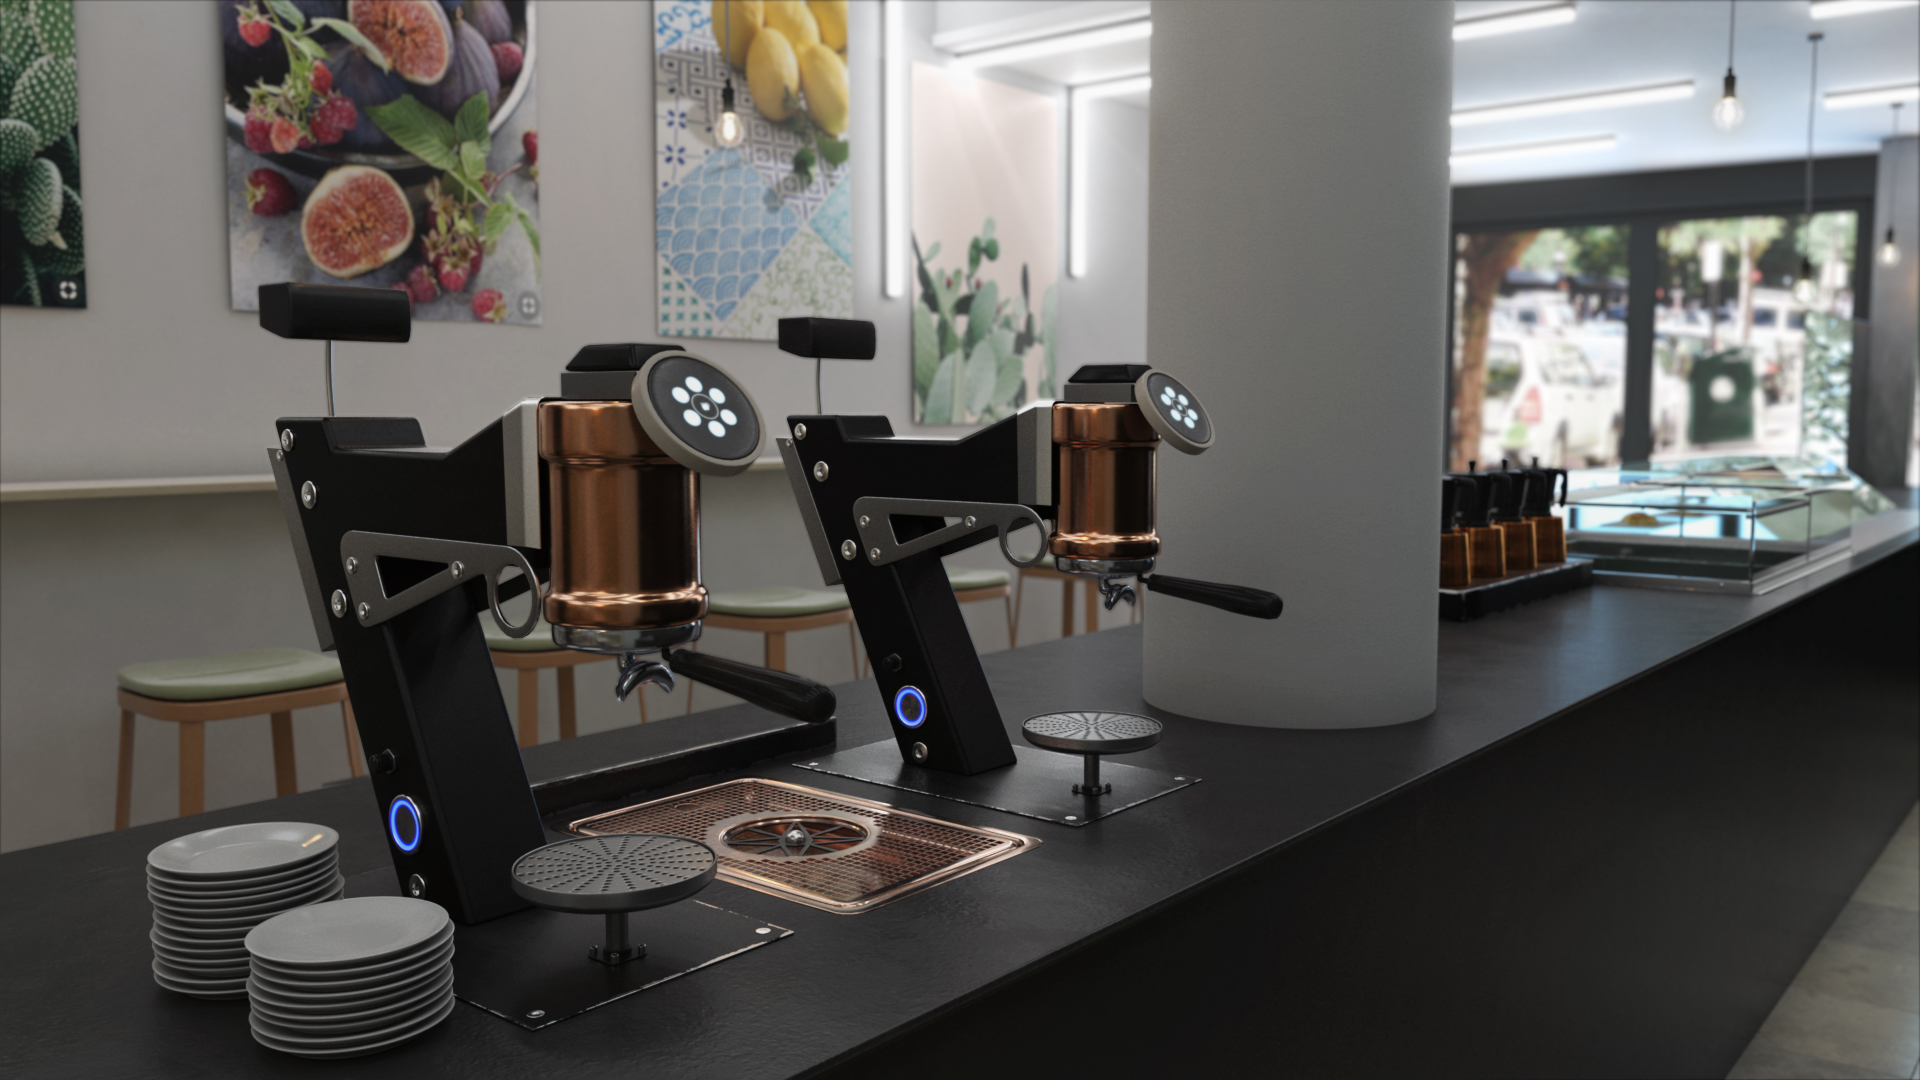 3D generiertes Bild von zwei Kaffeemaschinen in einer Cafebar